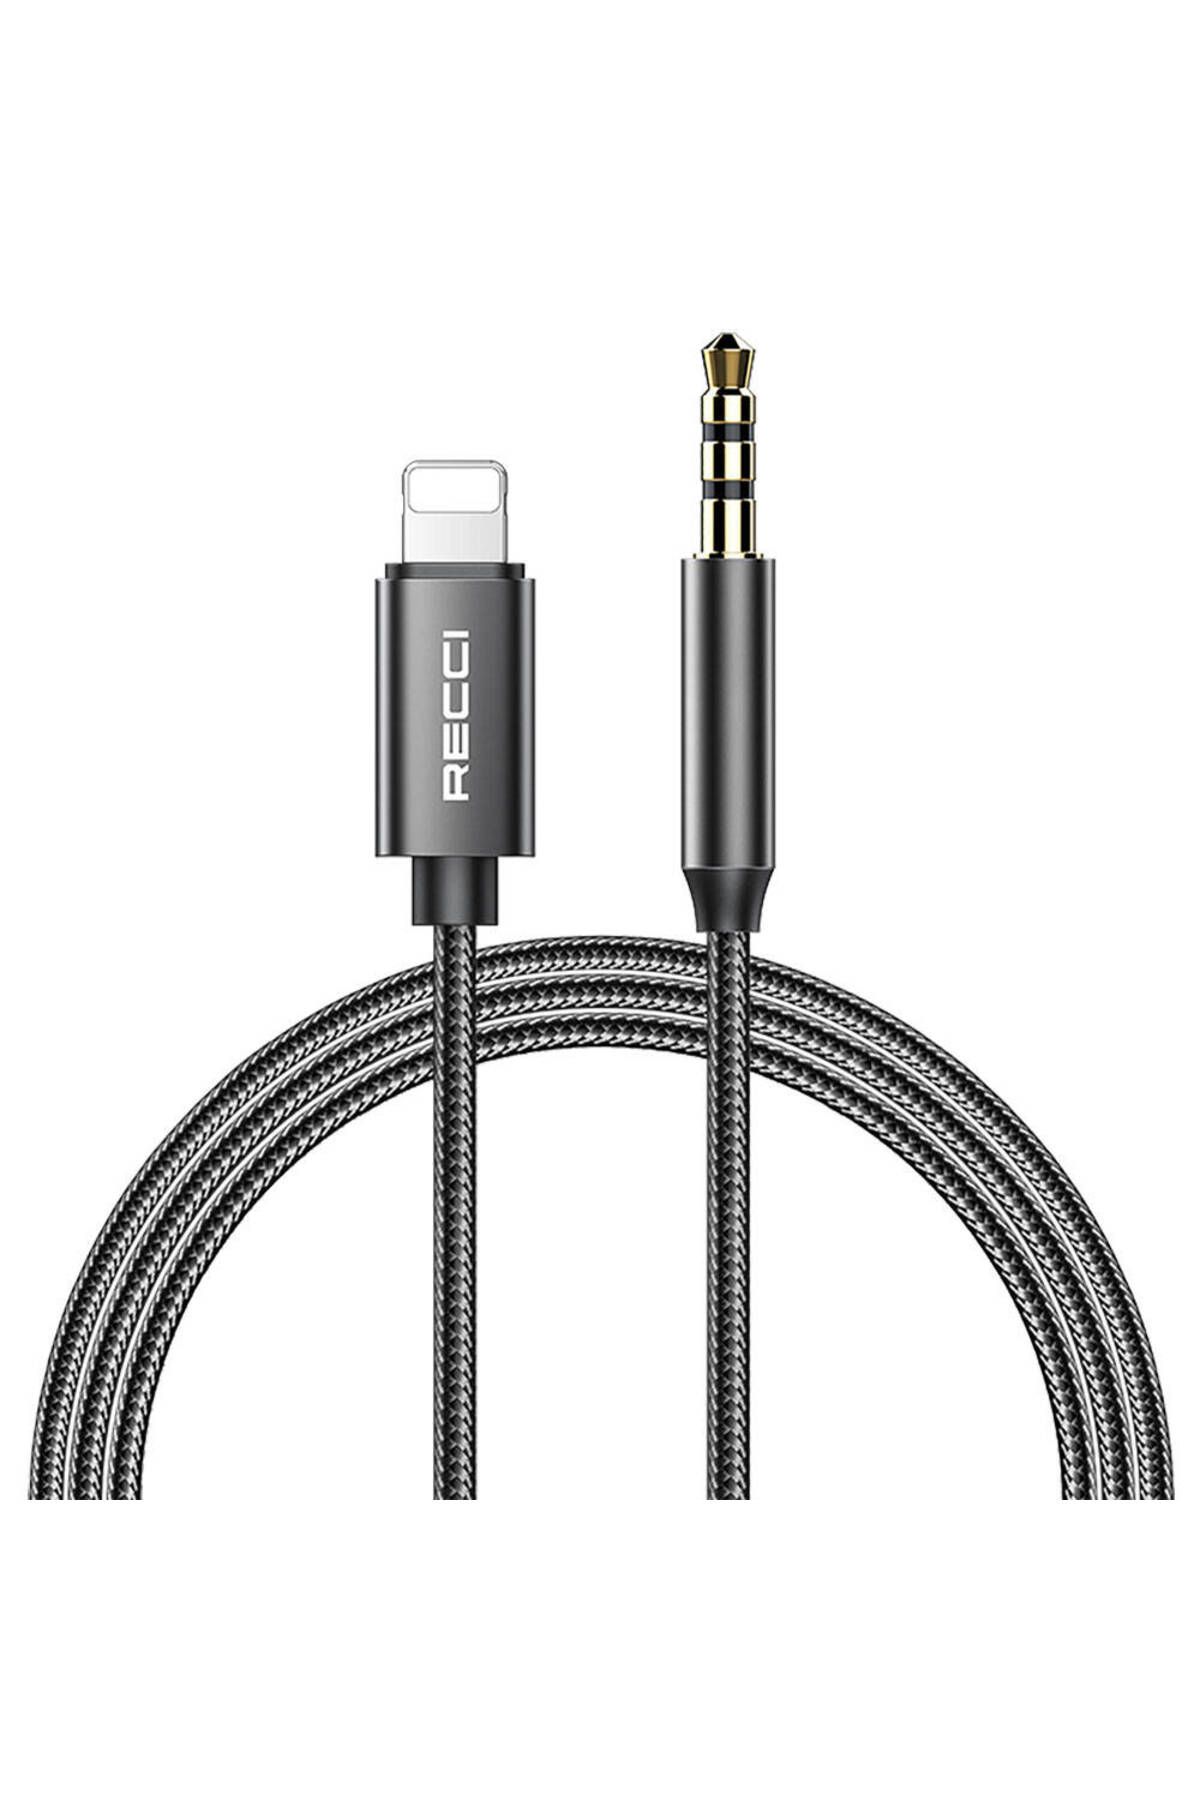 Recci iPhone Aux Kablo Recci RH02 Lightning to 3.5mm AUX Audio Ses Kablo Siyah